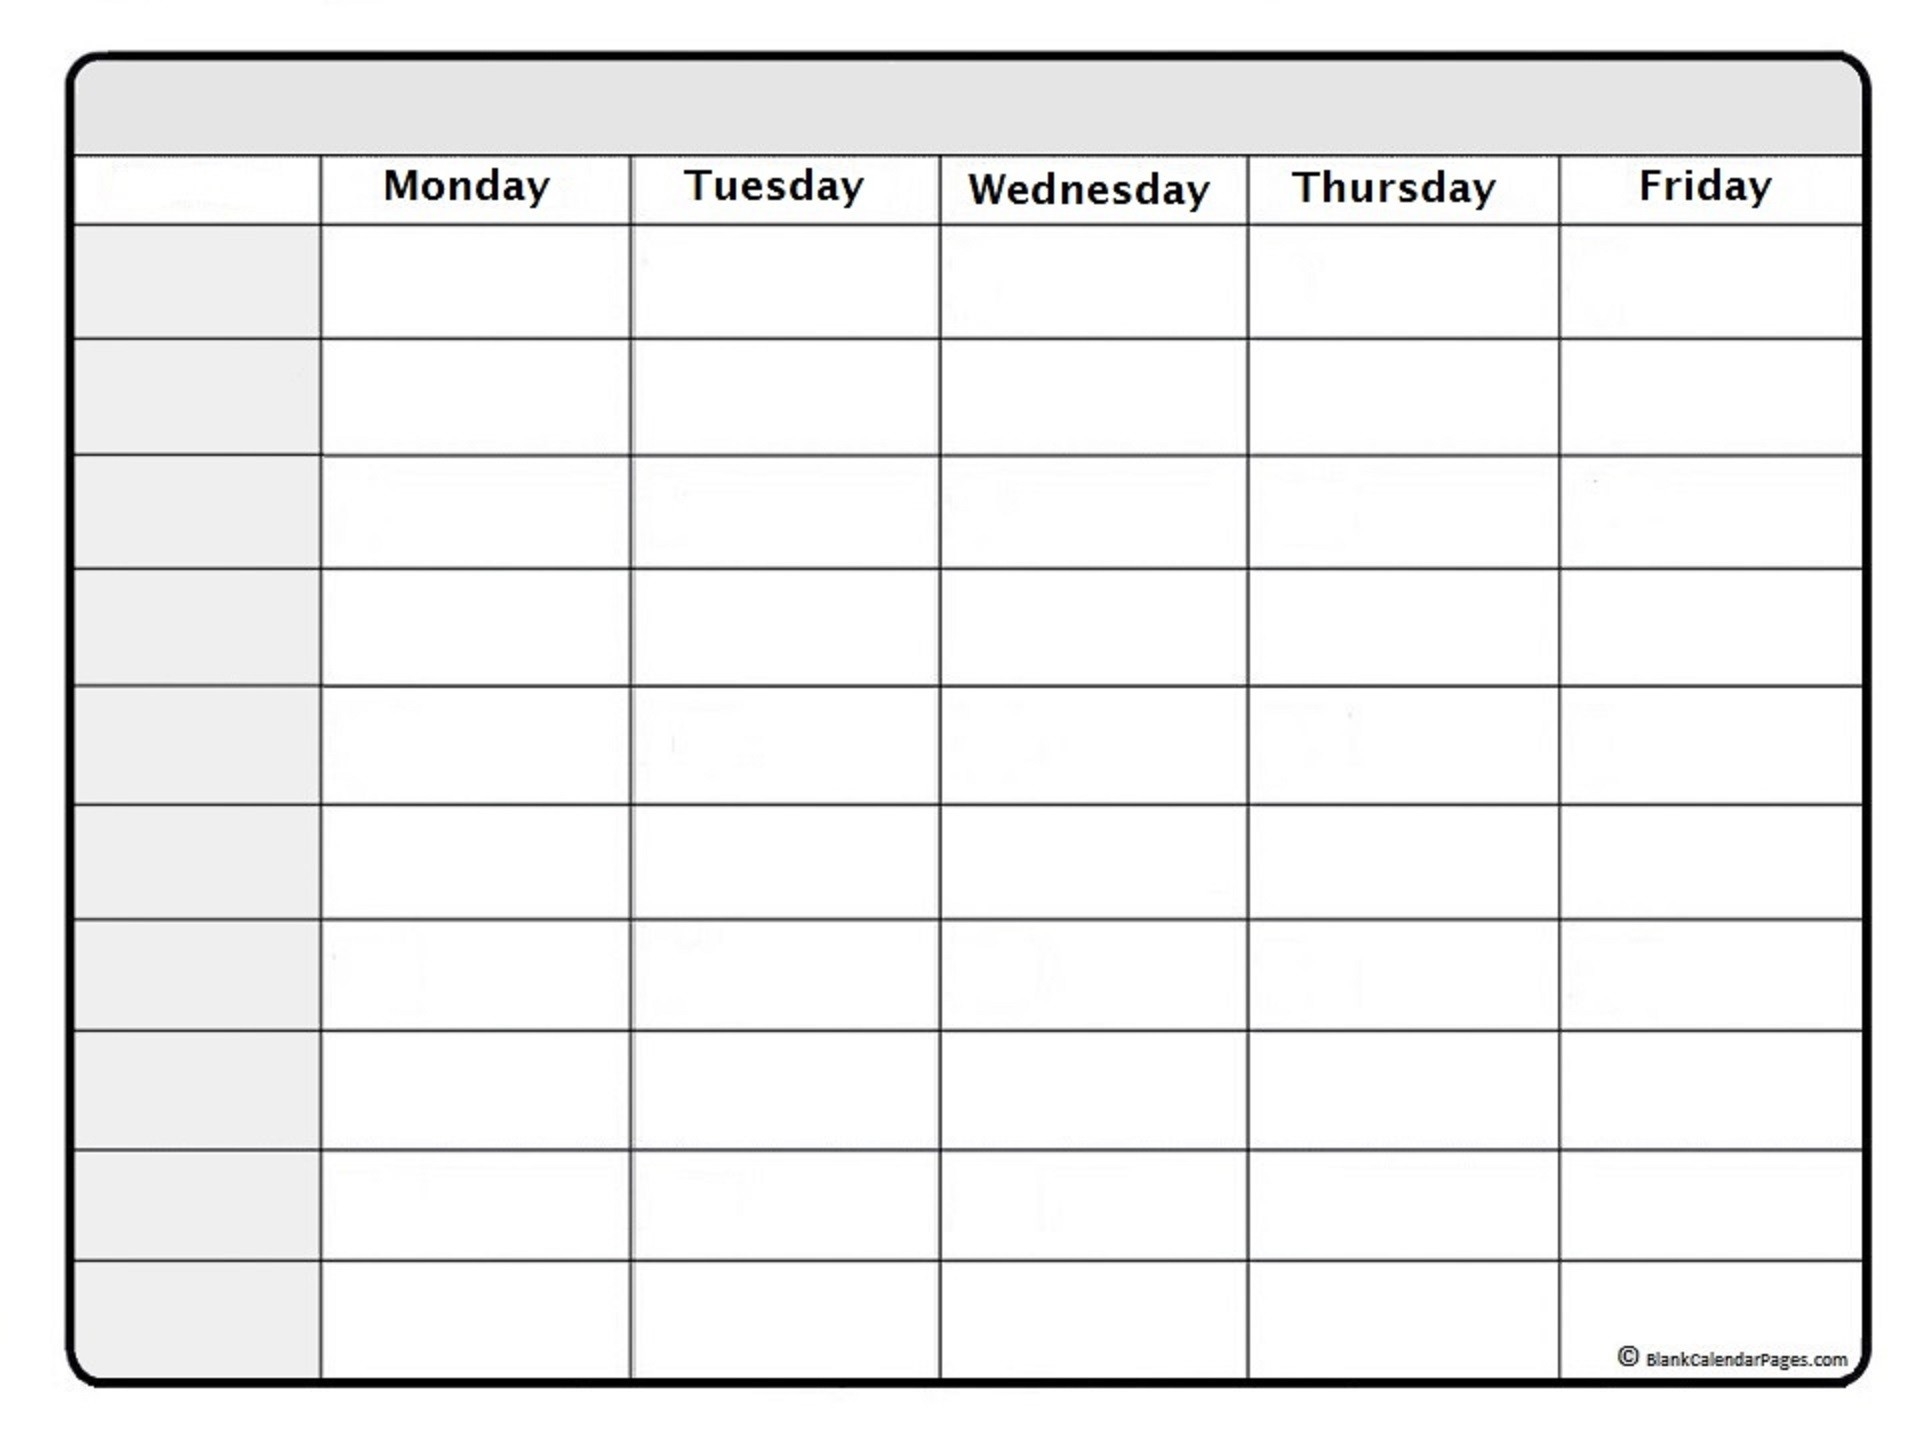 January 2021 Weekly Calendar | January 2021 Weekly Calendar-Calendar January 2021 Hourly Daily Task List Template